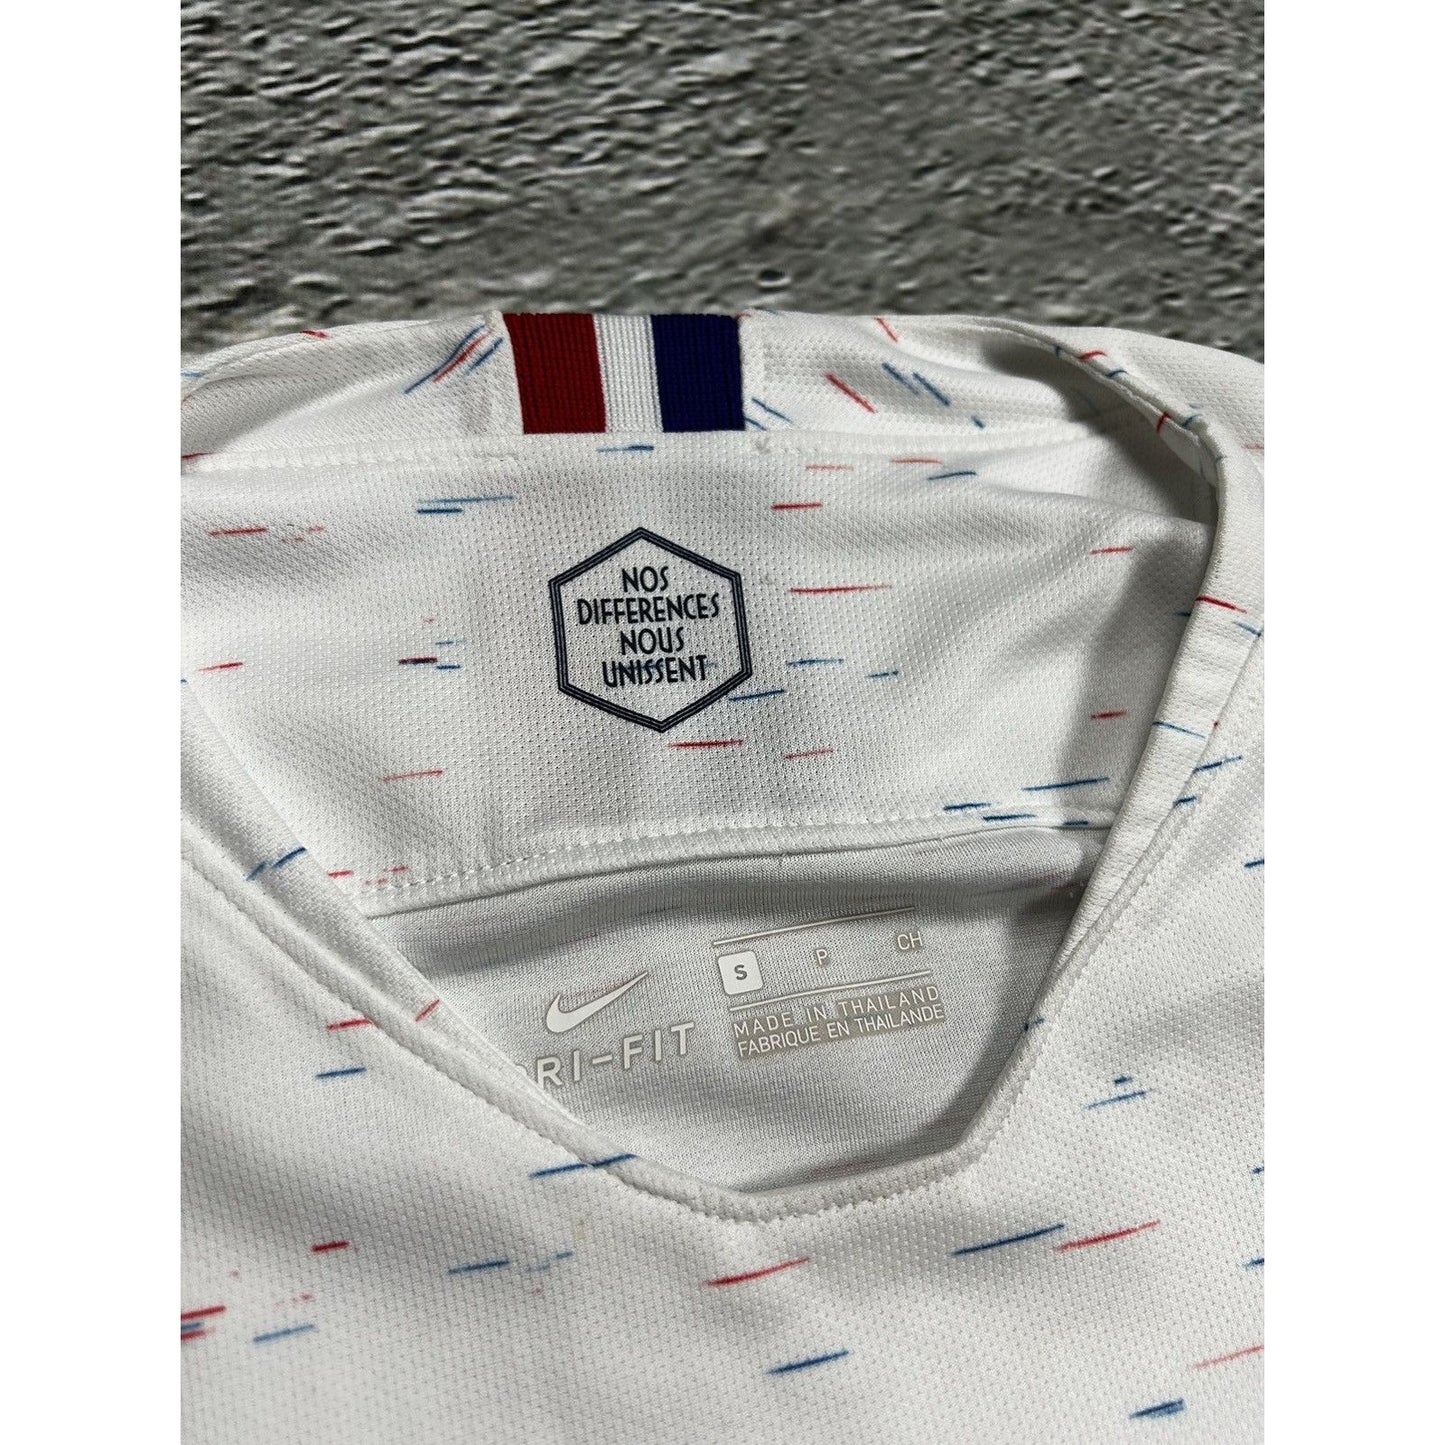 France jersey Nike white away kit 2018